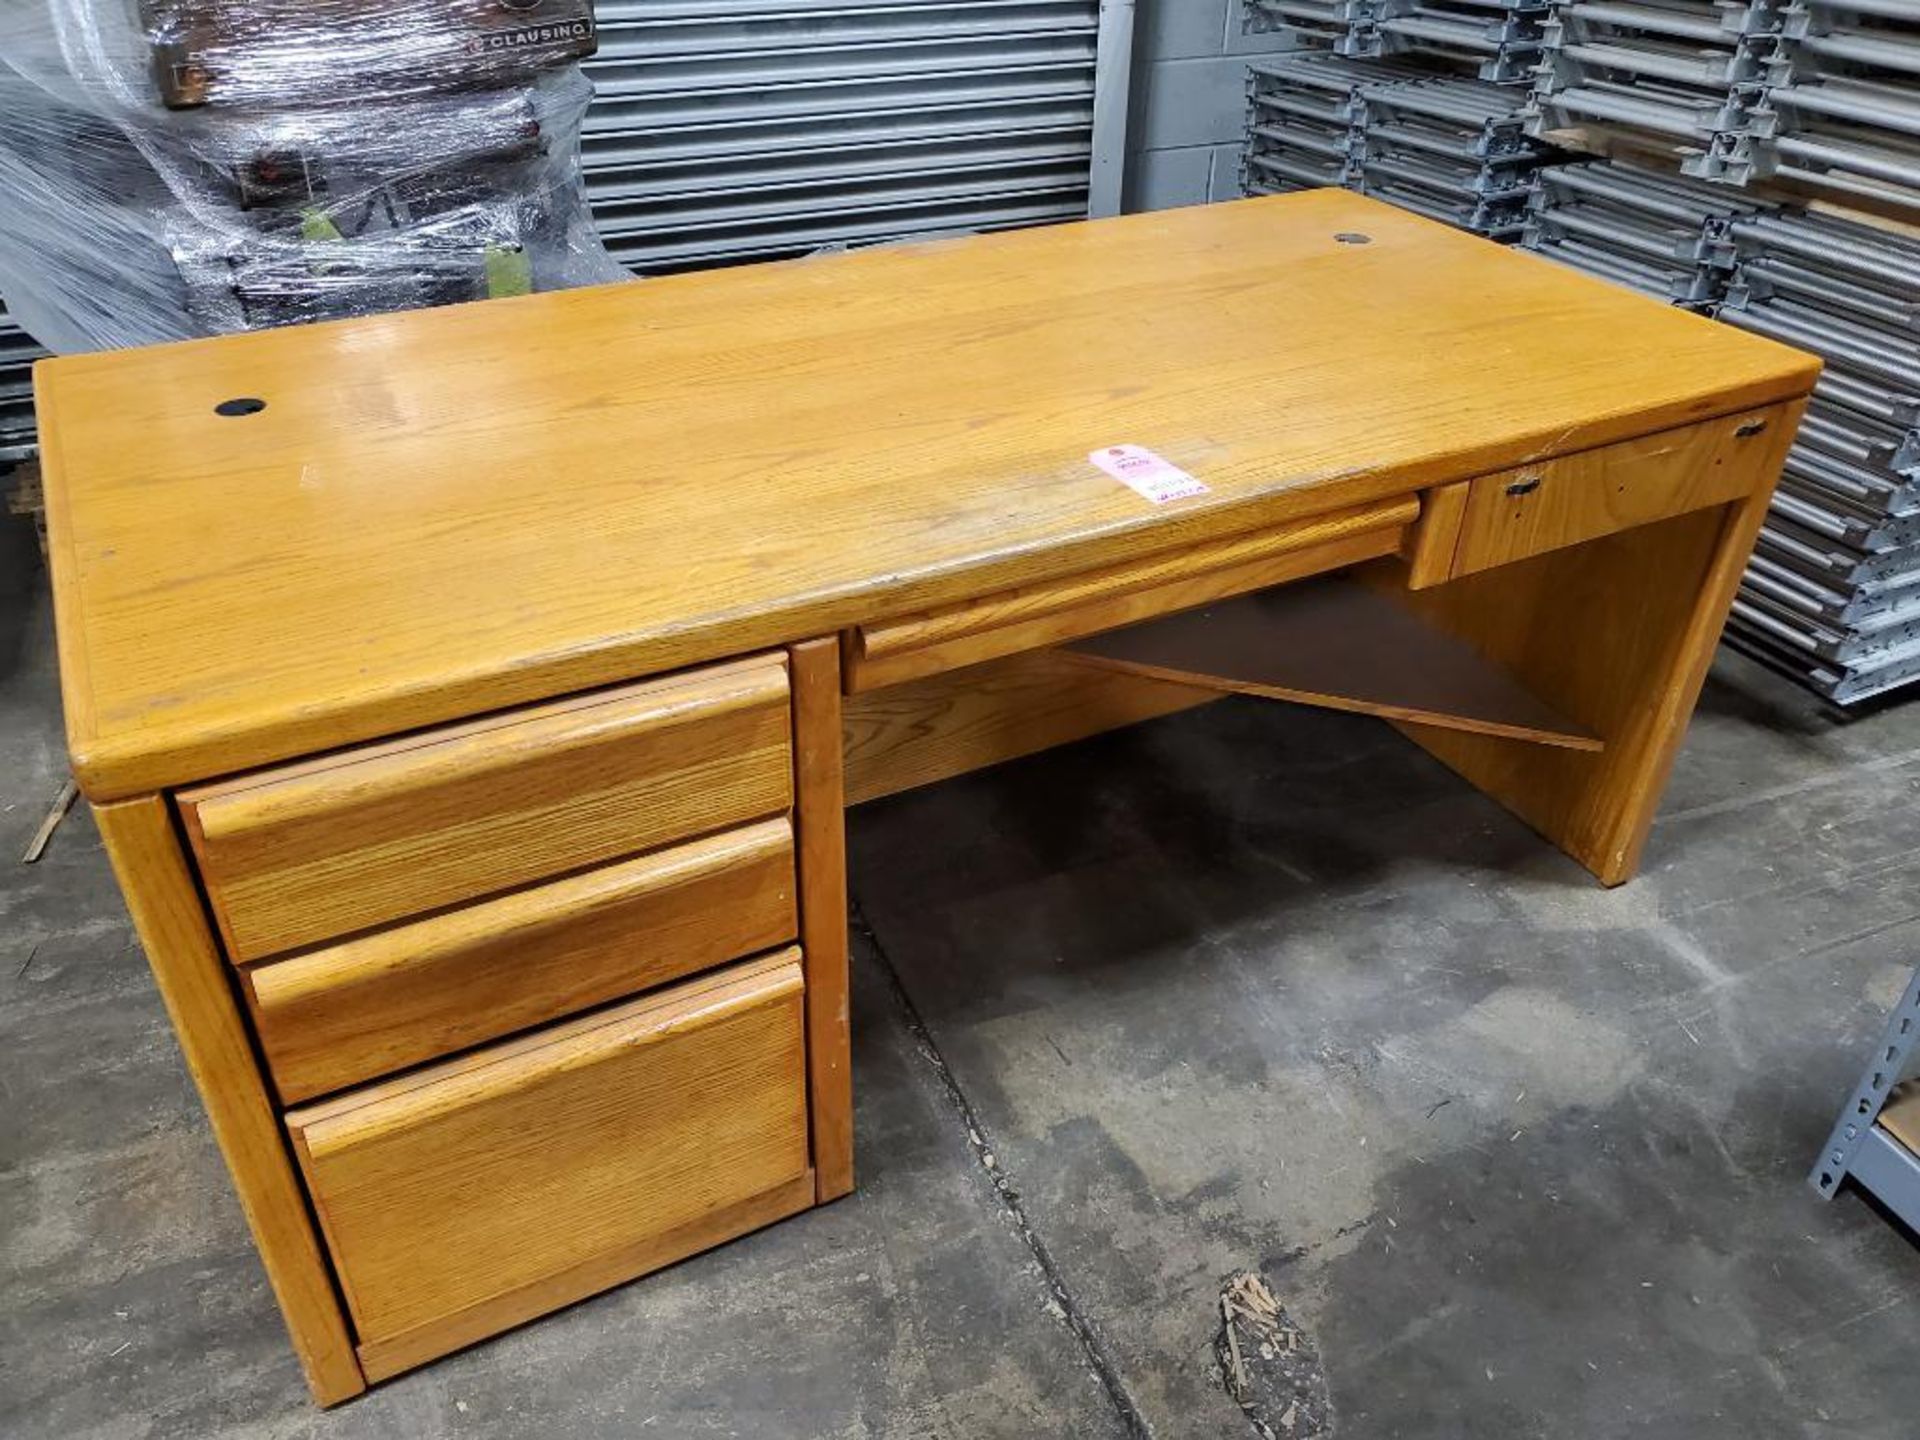 Oak wood office desk. 68in long by 33in deep by 29in tall.